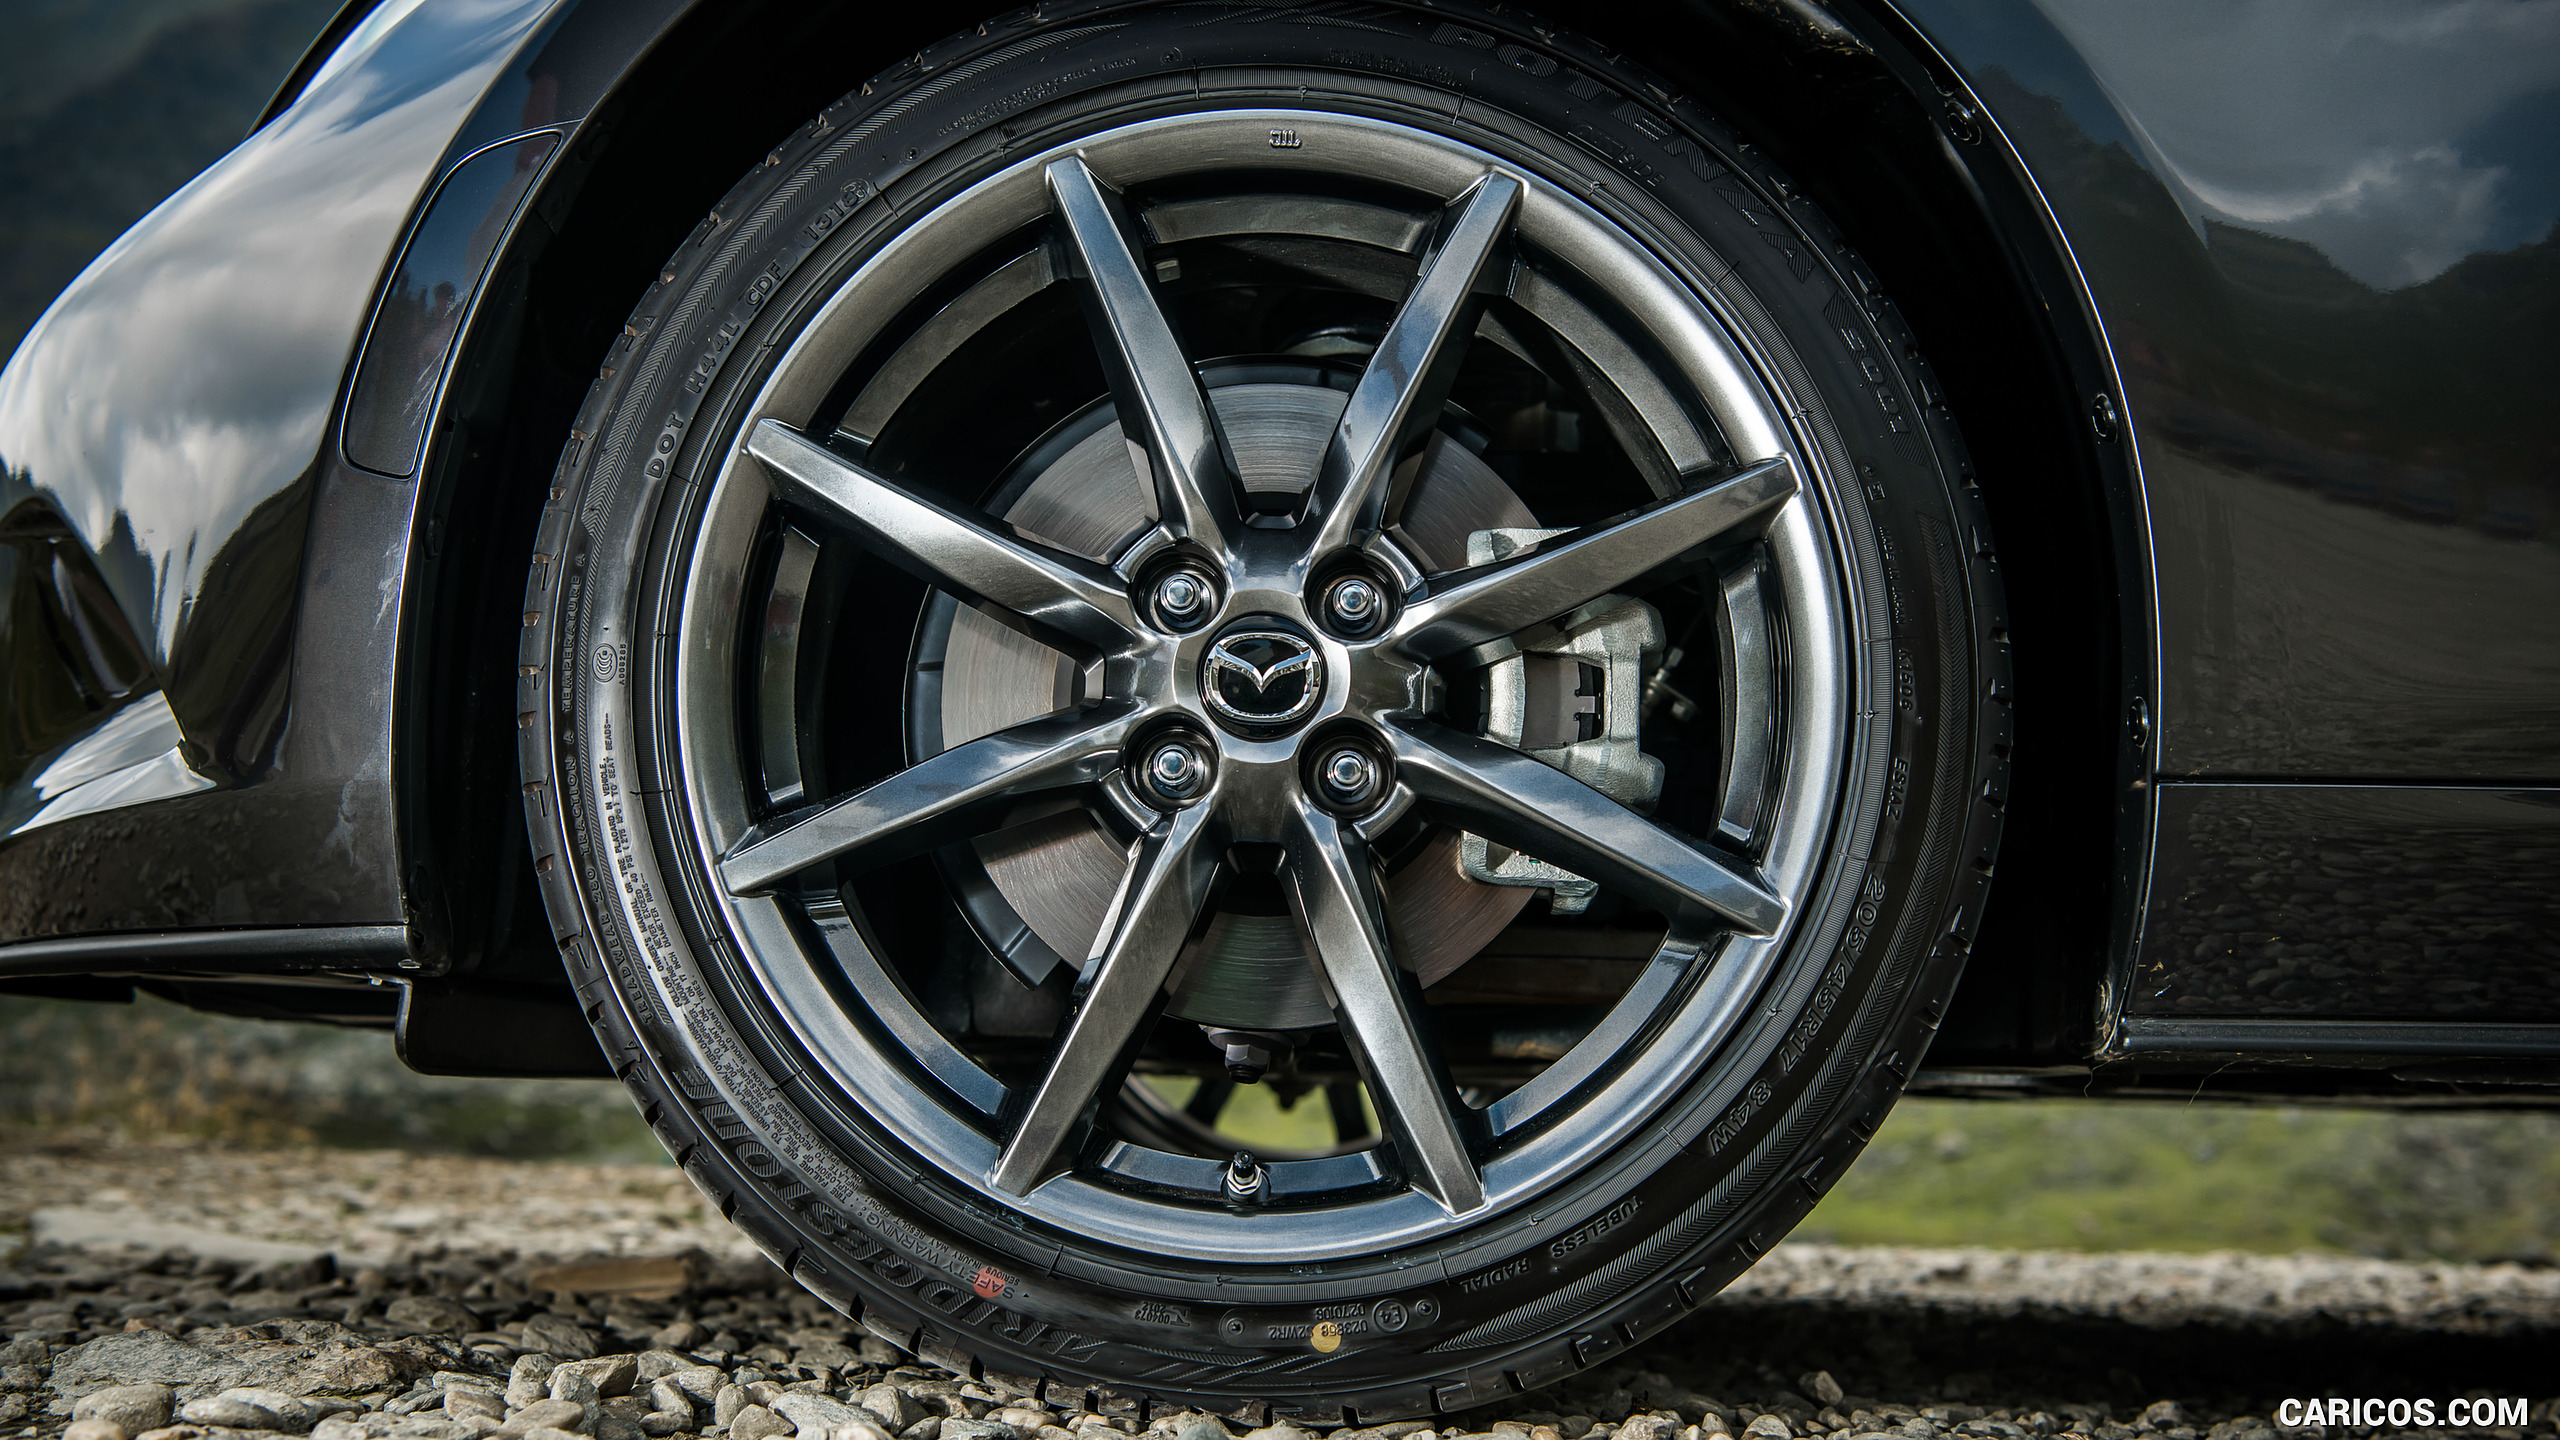 2019 Mazda MX-5 Roadster - Wheel, #52 of 101